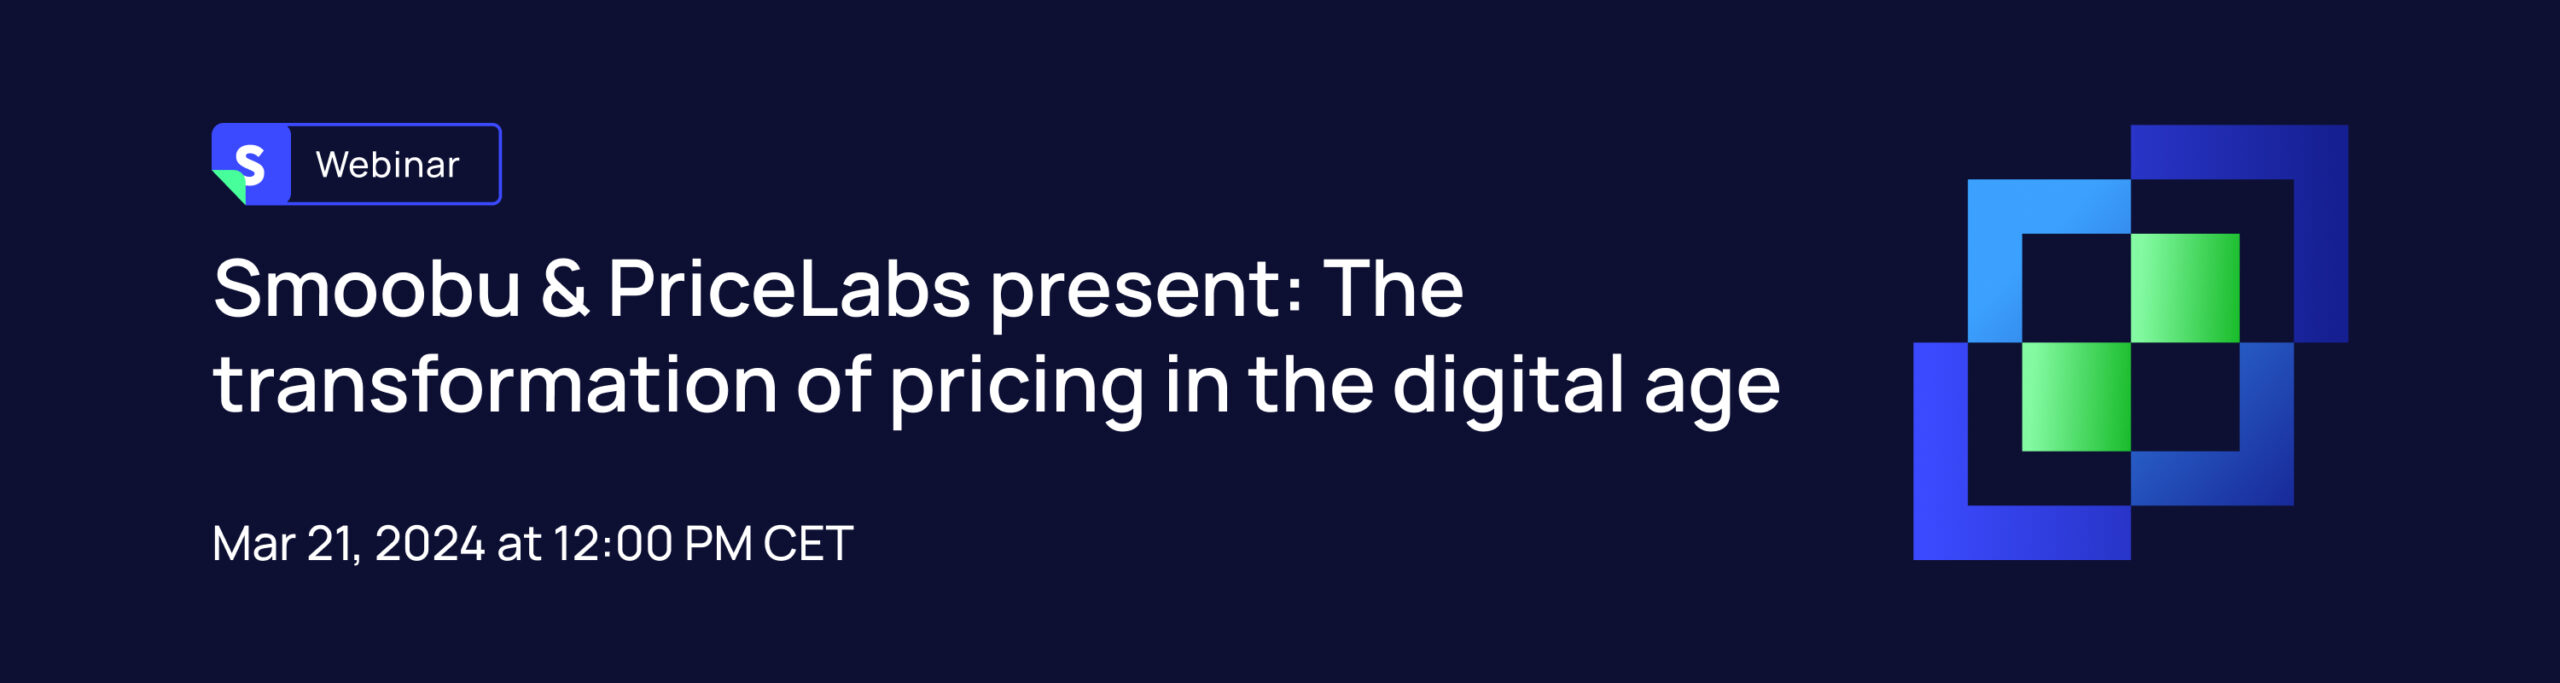 ᐅ Smoobu & PriceLabs presentano: La trasformazione dei prezzi nell’era digitale | Smoobu